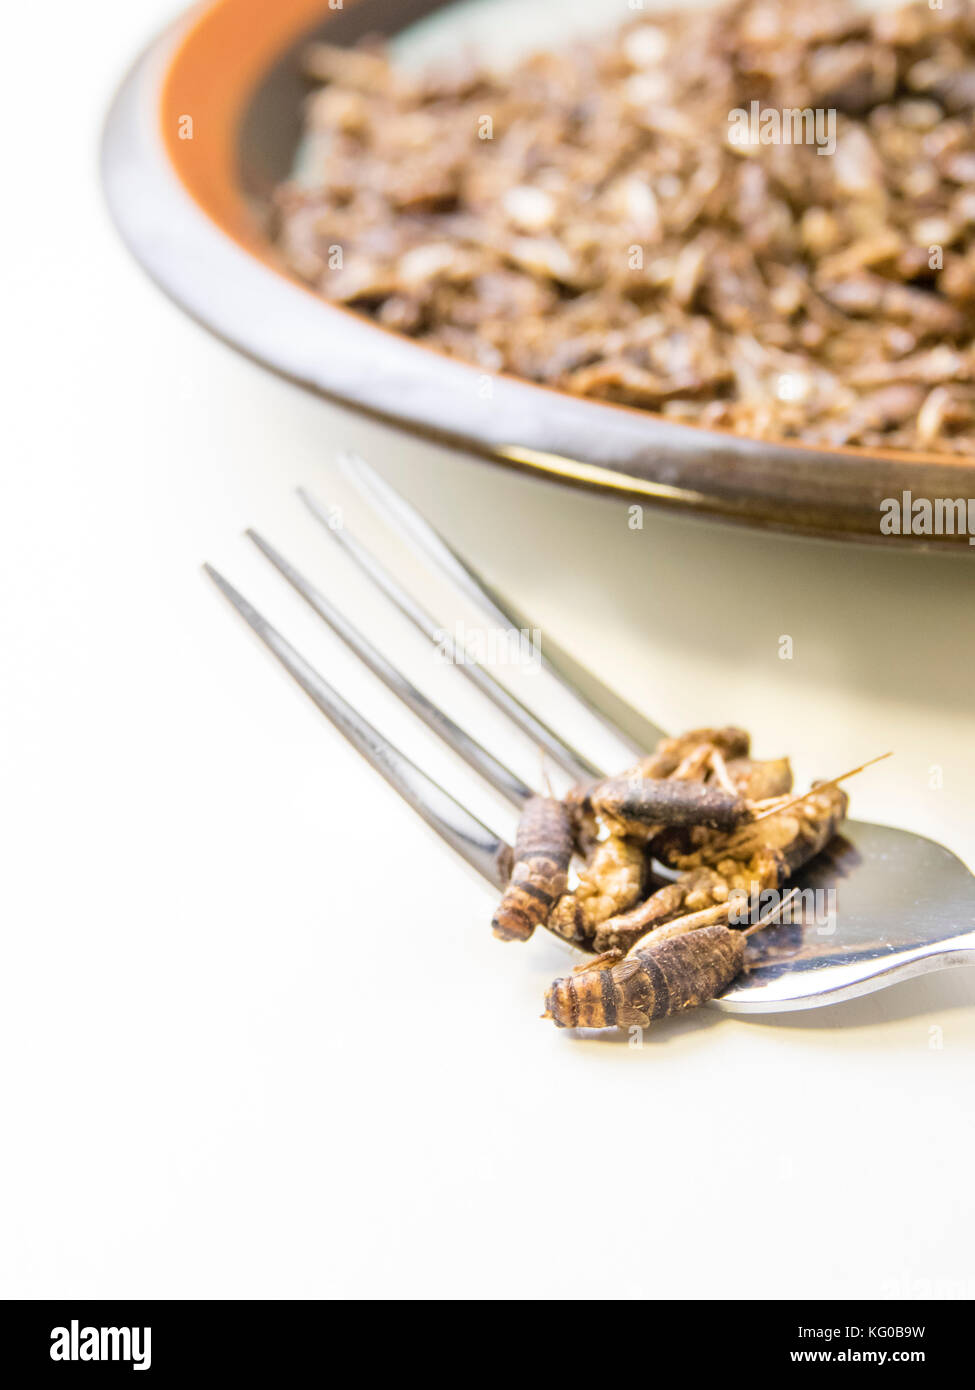 Grilli sulla piastra in cucina. insetti commestibili come il prodotto alimentare riempito con la proteina e la nutrizione. Foto Stock